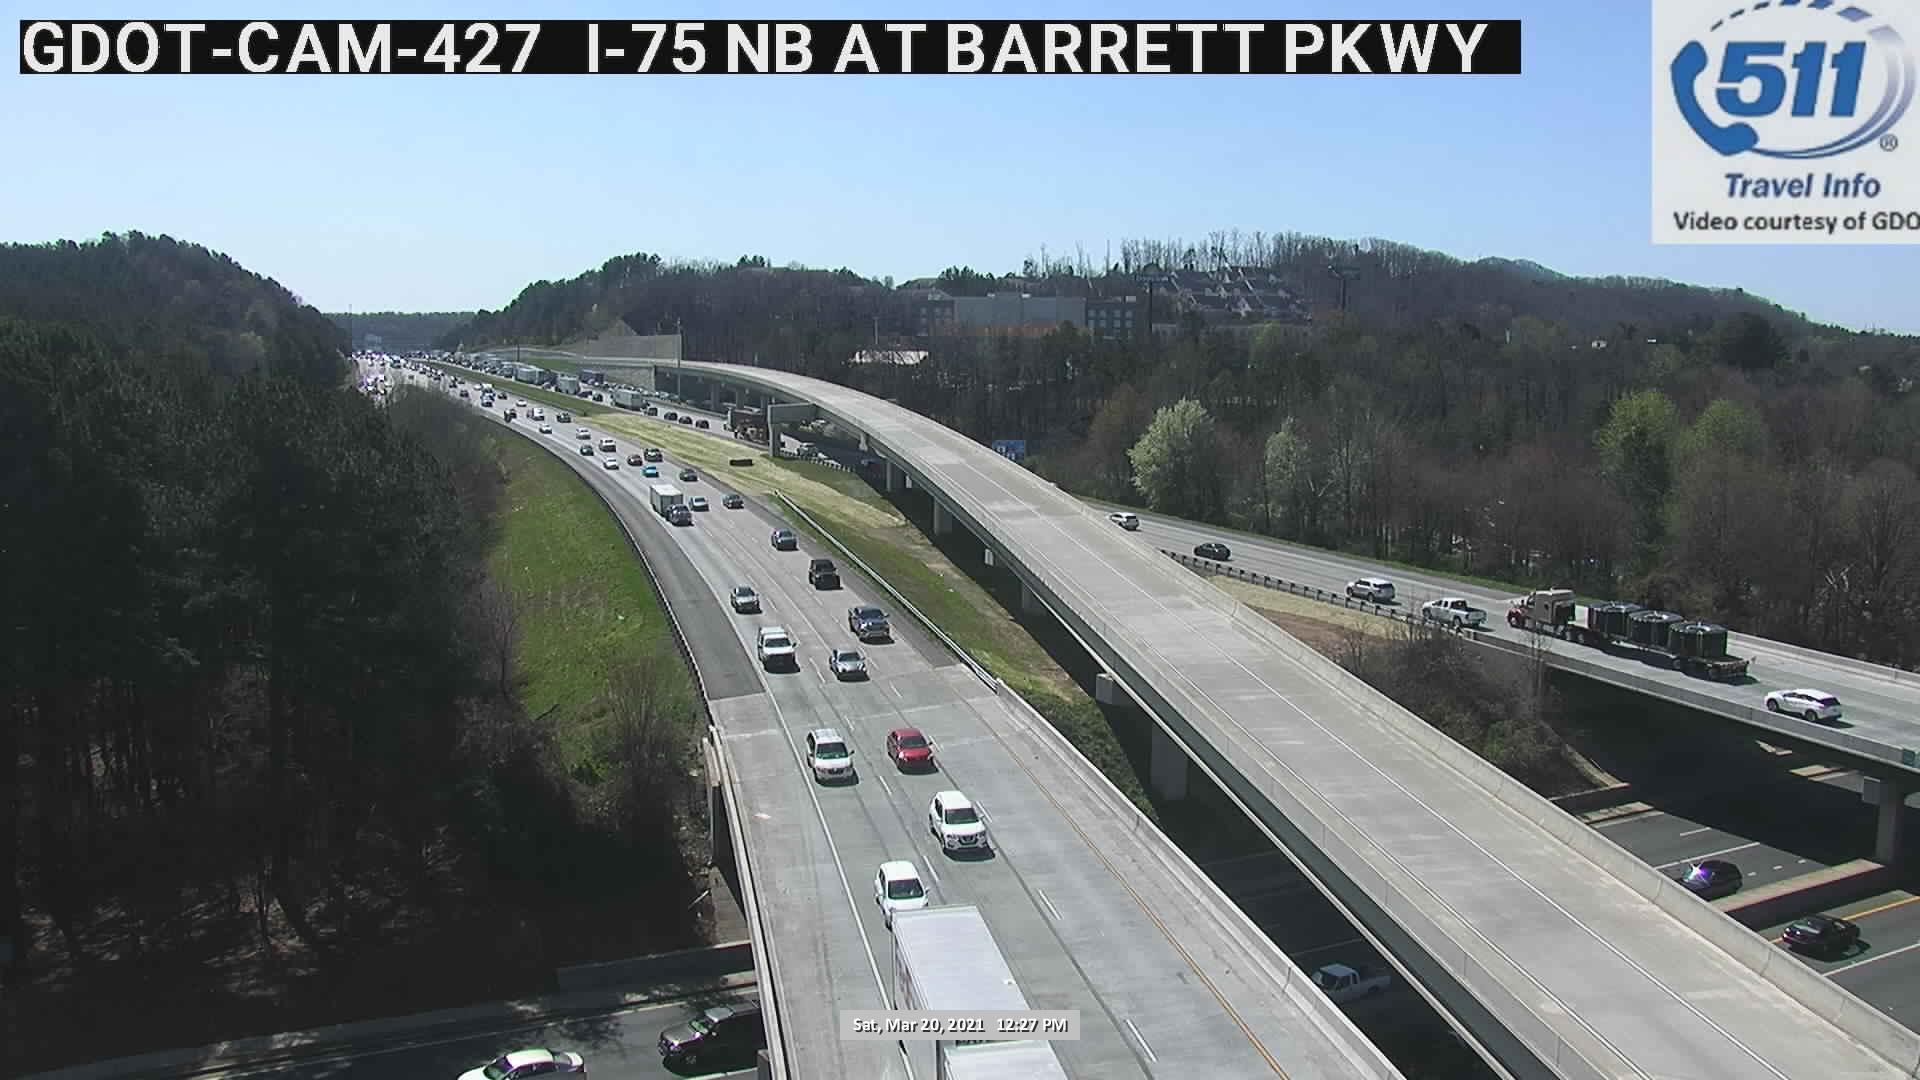 I-75 : BARRETT PKWY (N) (5154) - Atlanta and Georgia